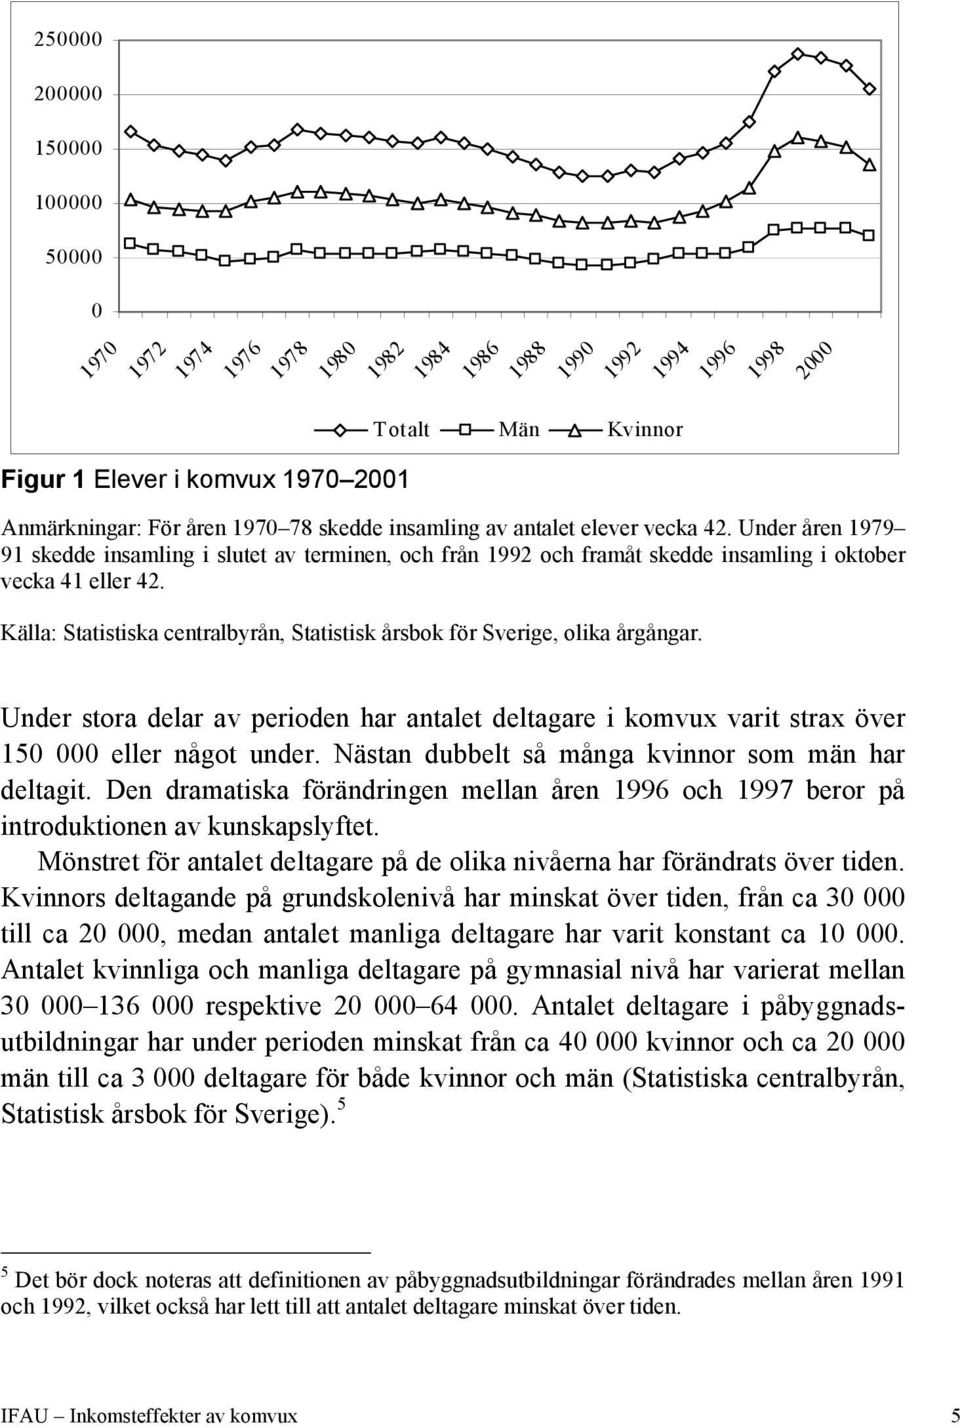 Källa: Statistiska centralbyrån, Statistisk årsbok för Sverige, olika årgångar. Under stora delar av perioden har antalet deltagare i komvux varit strax över 150 000 eller något under.